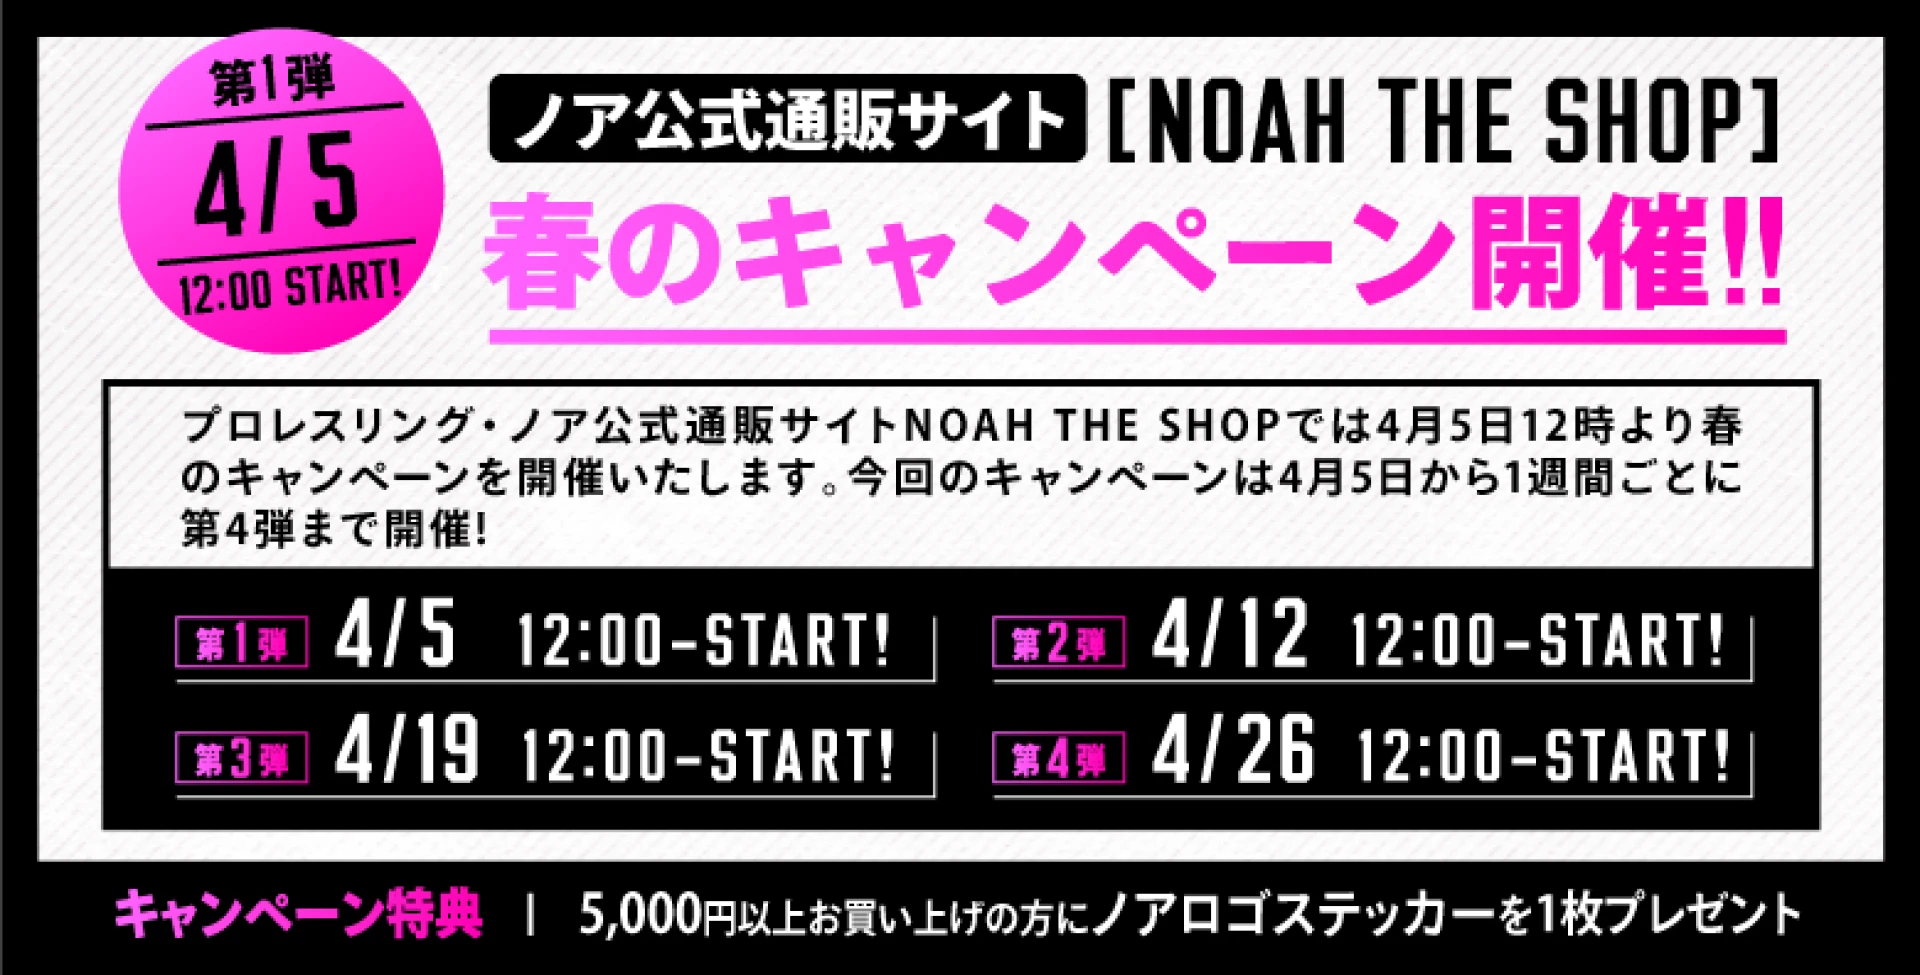 【第1弾は4月5日12時Start!】ノア公式通販サイトNOAH THE SHOP 春のキャンペーン開催のお知らせ